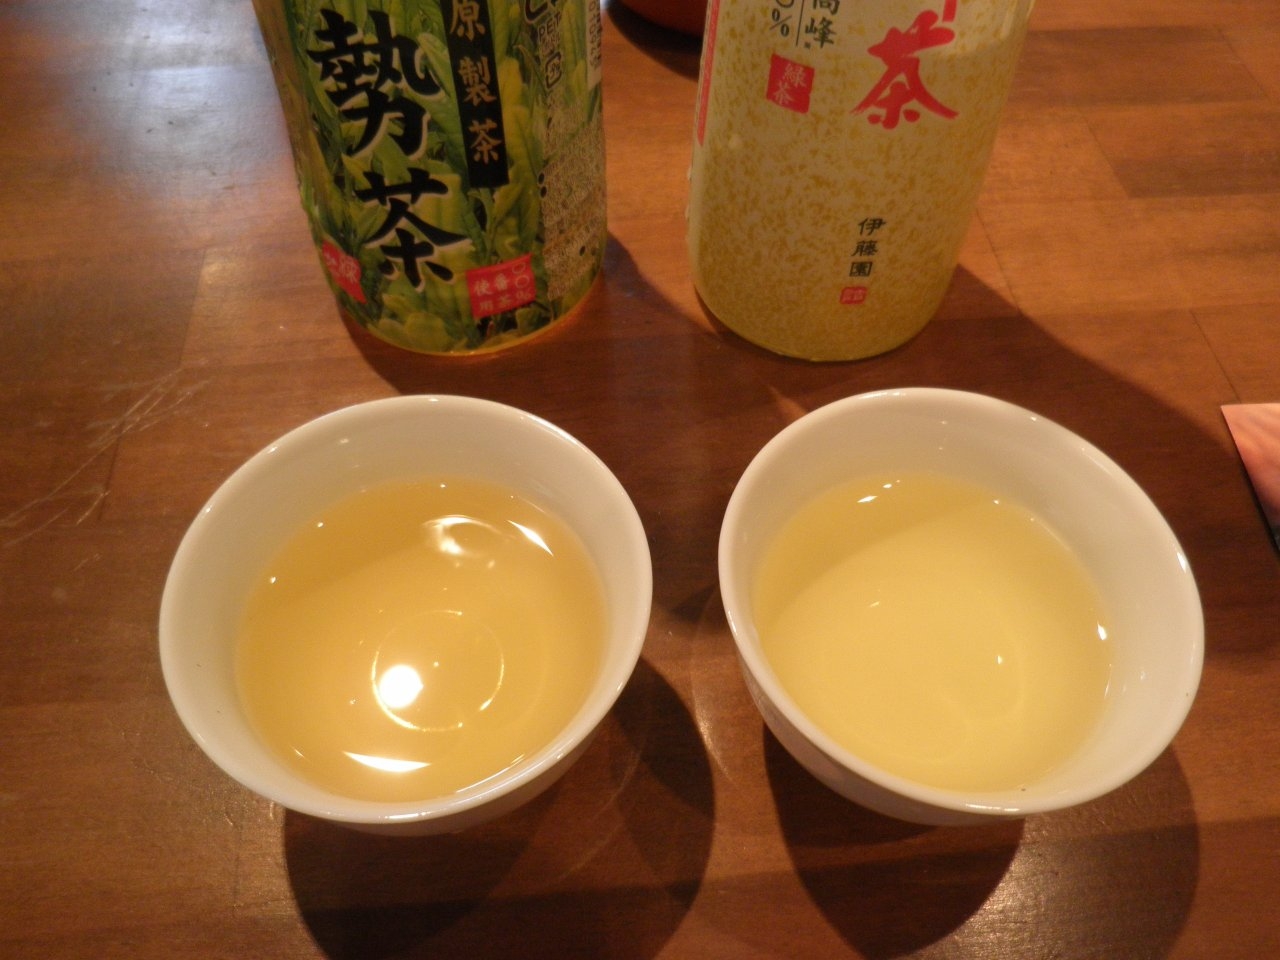 水色が全く違います。飲み比べるとよくわかる二つのお茶の違い。比べるとわかるそれぞれの良さ・・